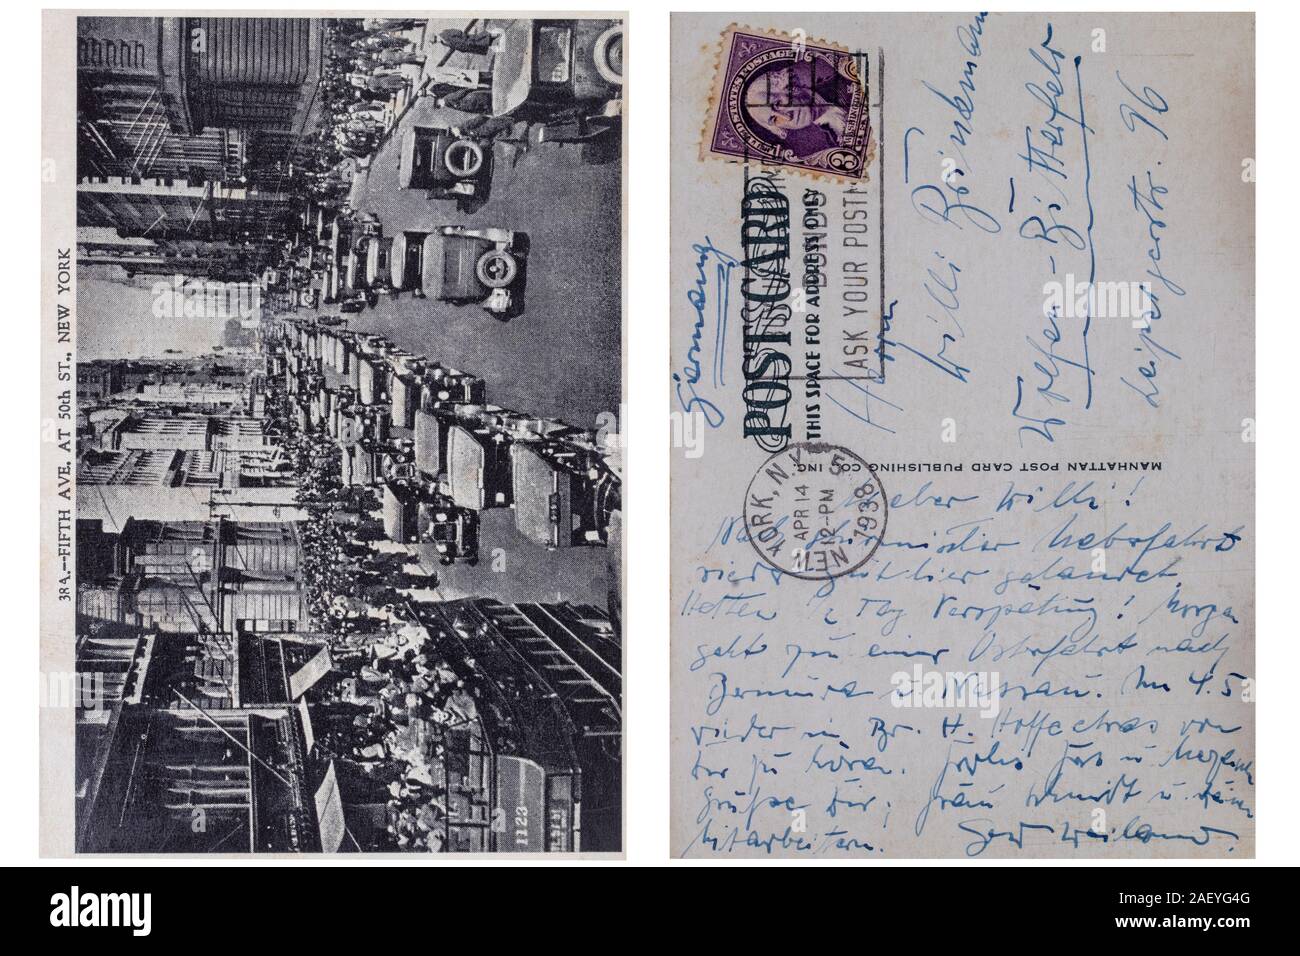 Carte postale vintage. Noir blanc carte postale de la 5e Rue à New York à partir de 1938, qui a été envoyé en Allemagne avec un cachet du 14 avril 1938. Macro. S Banque D'Images